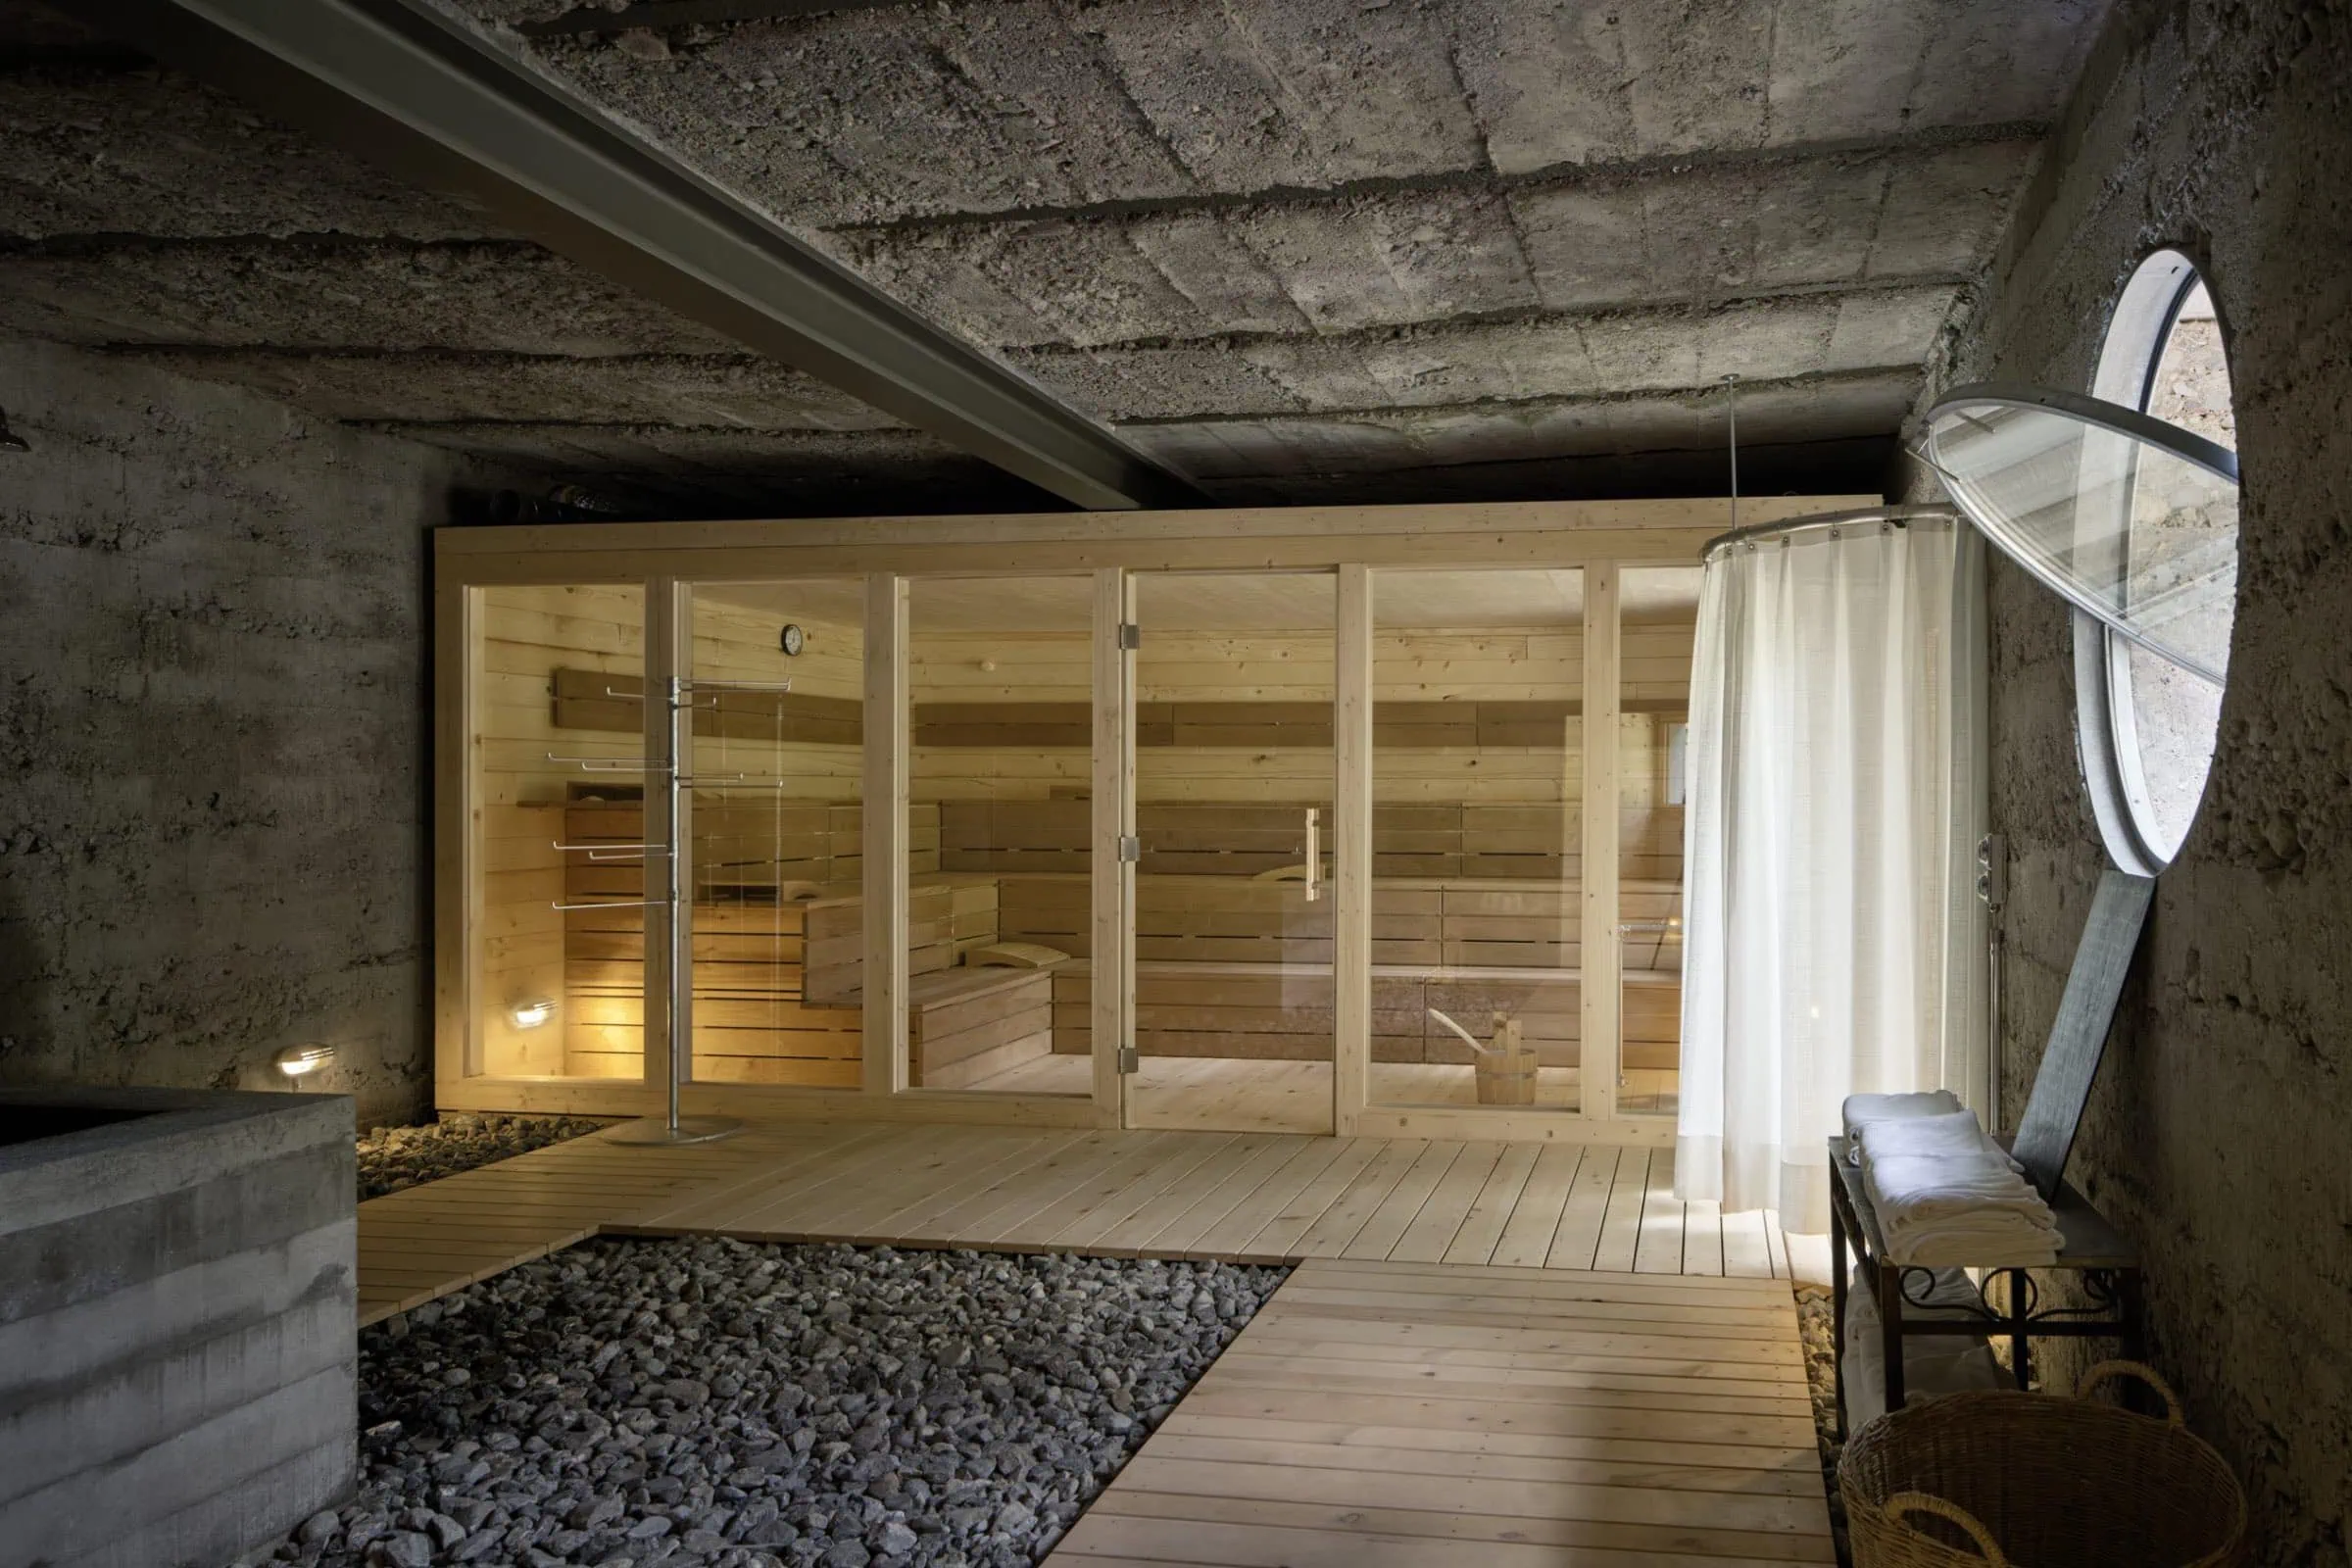 Urlaubstipp Für Familien Von Good Travel: Sauna Im Kurhaus Bergün In Graubünden, Schweiz // Himbeer